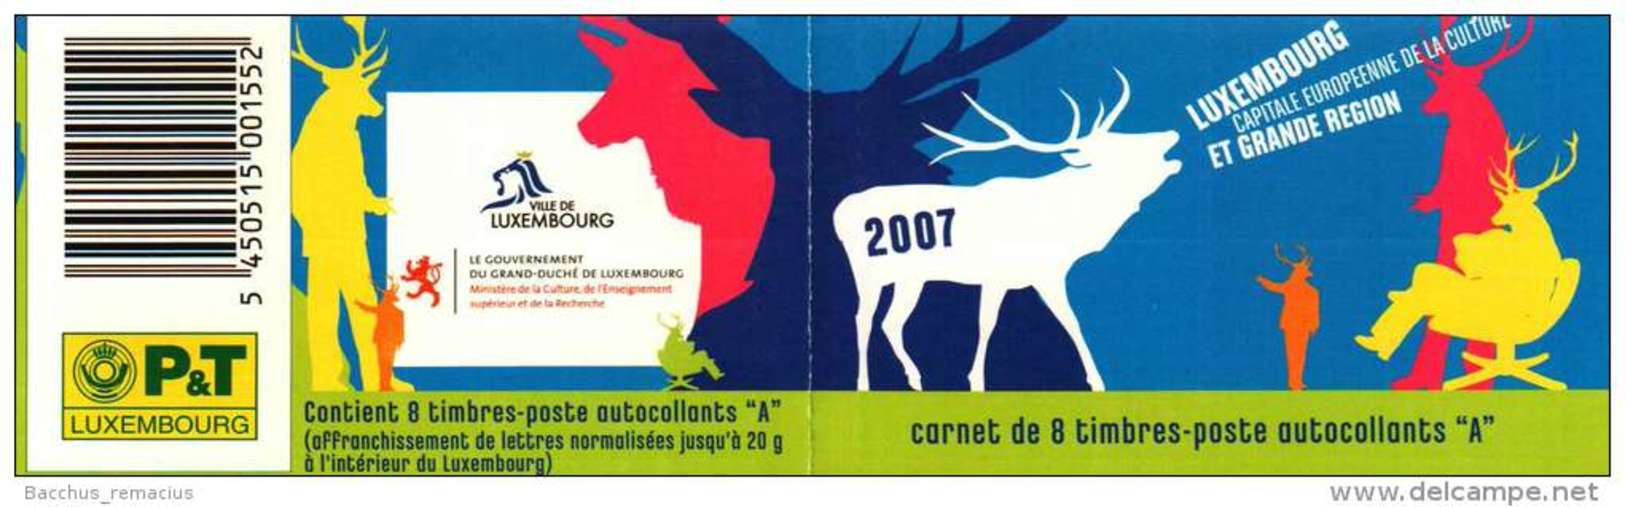 Luxembourg Et Grande Région  Carnet De 8 Timbres "A"  Autocollants Capitale Européenne De La Culture 2007 - Carnets